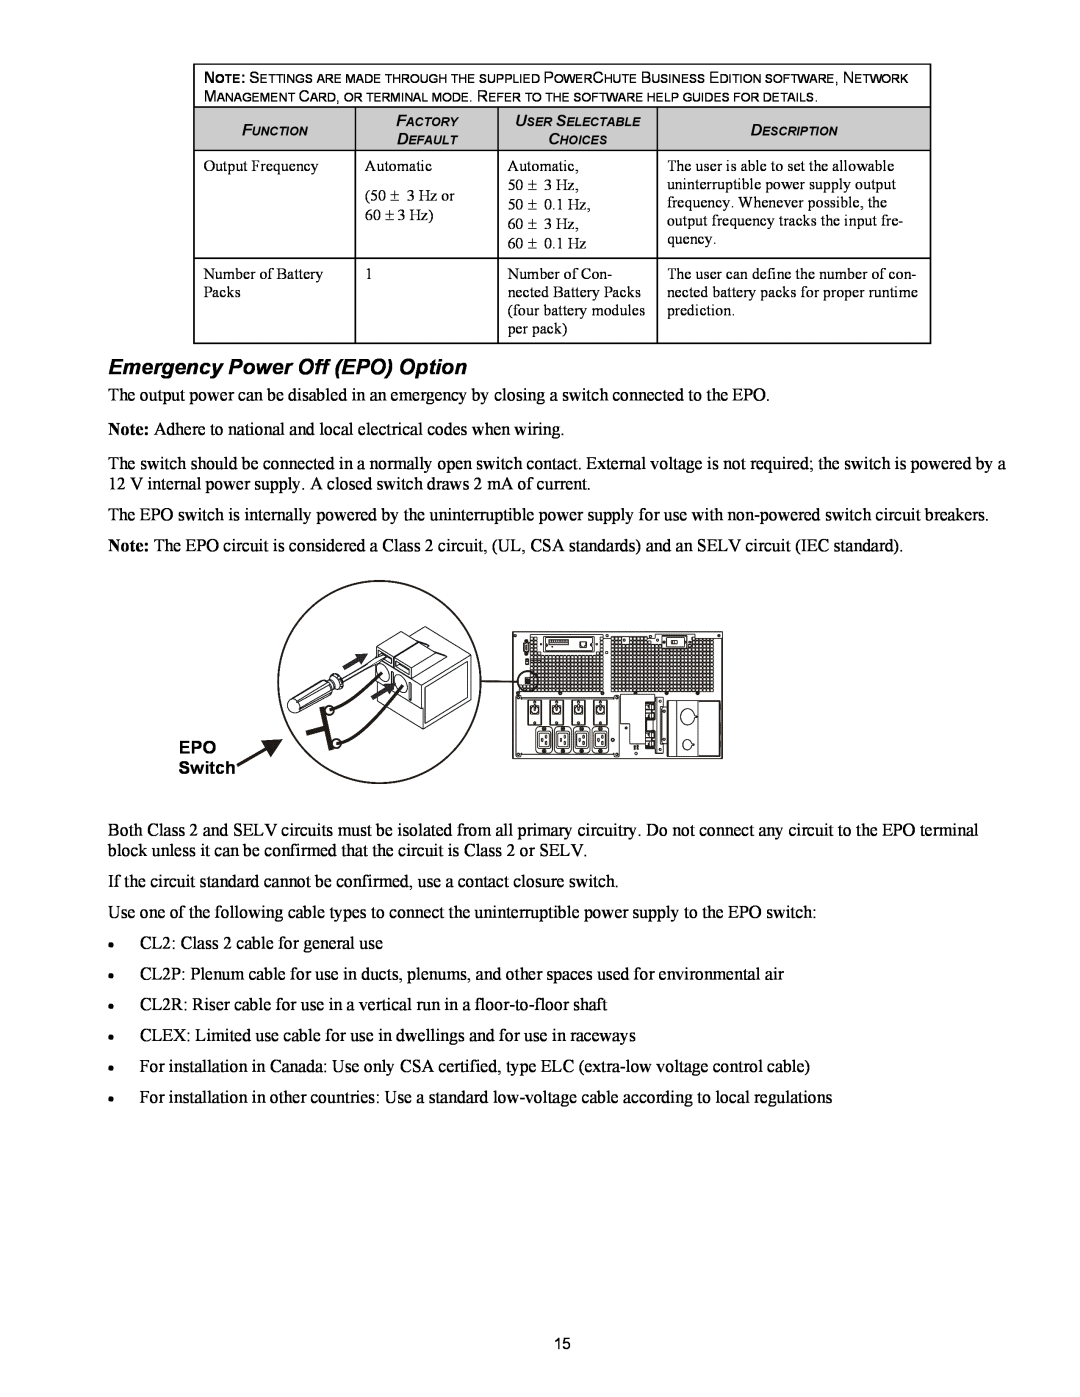 IBM IBM UPS 7500XHV, IBM UPS 10000XHV setup guide Emergency Power Off EPO Option, EPO Switch 